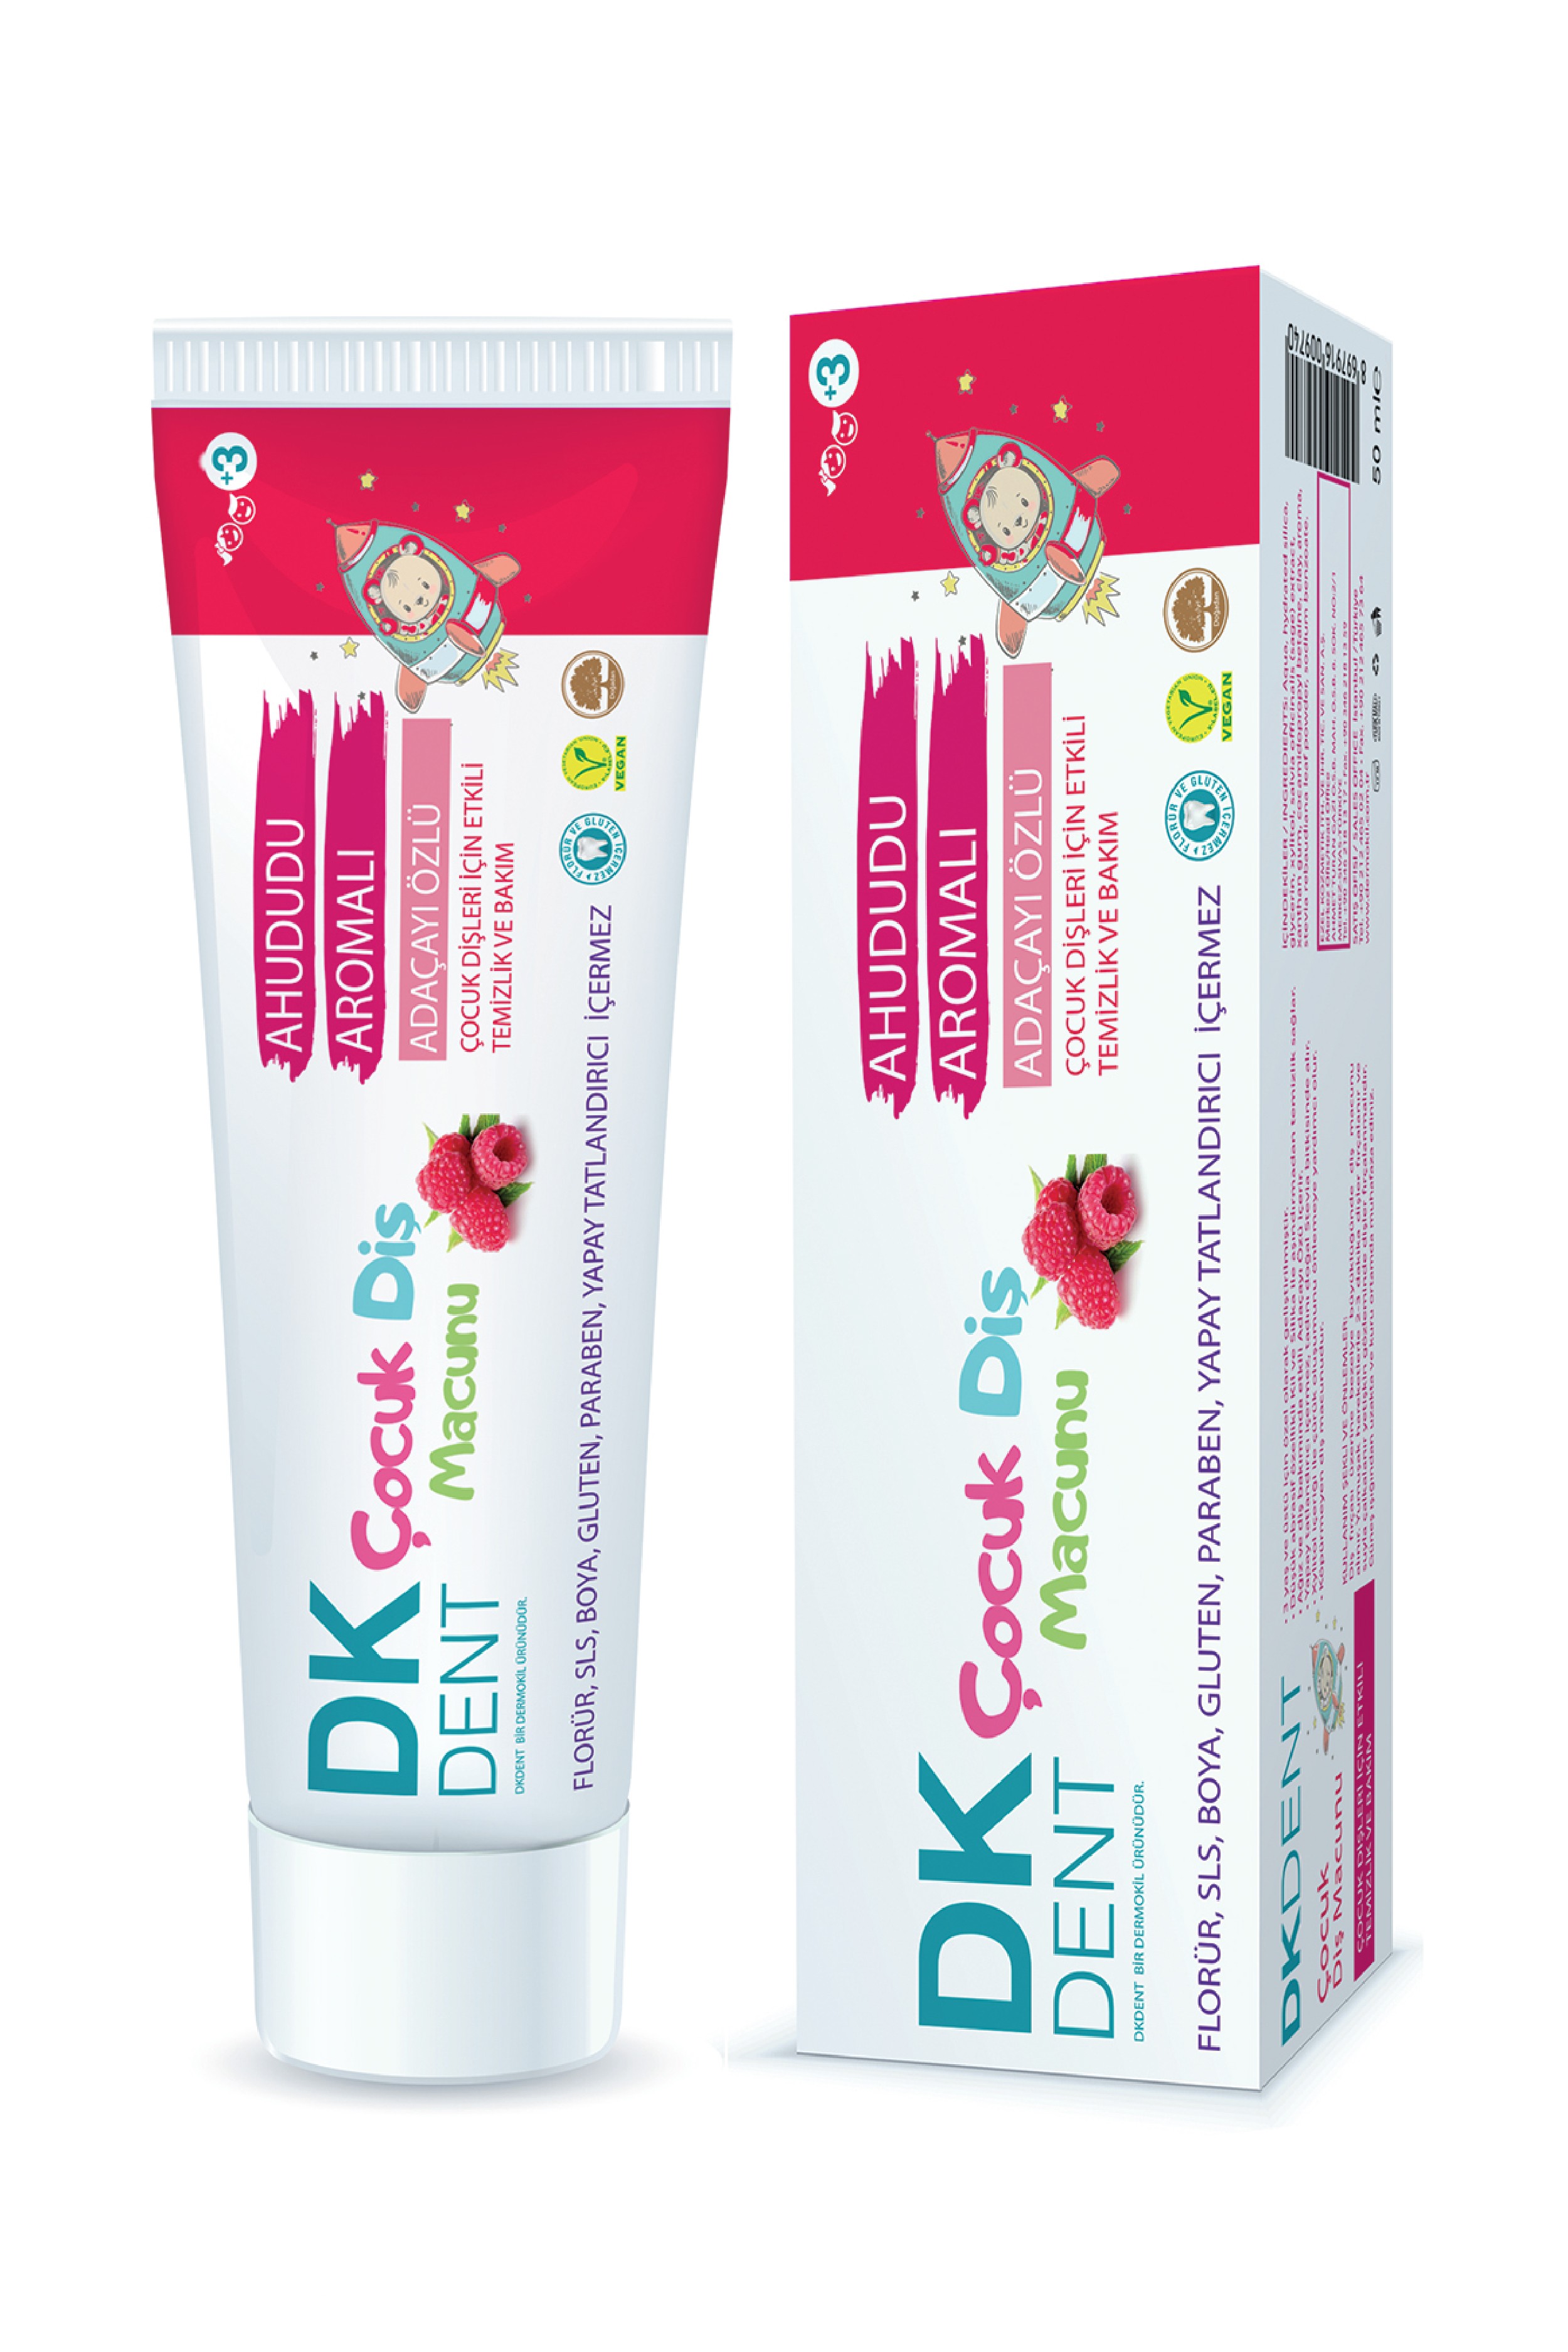 DKDENT Raspberry Flavored Children's Toothpaste 50 ML